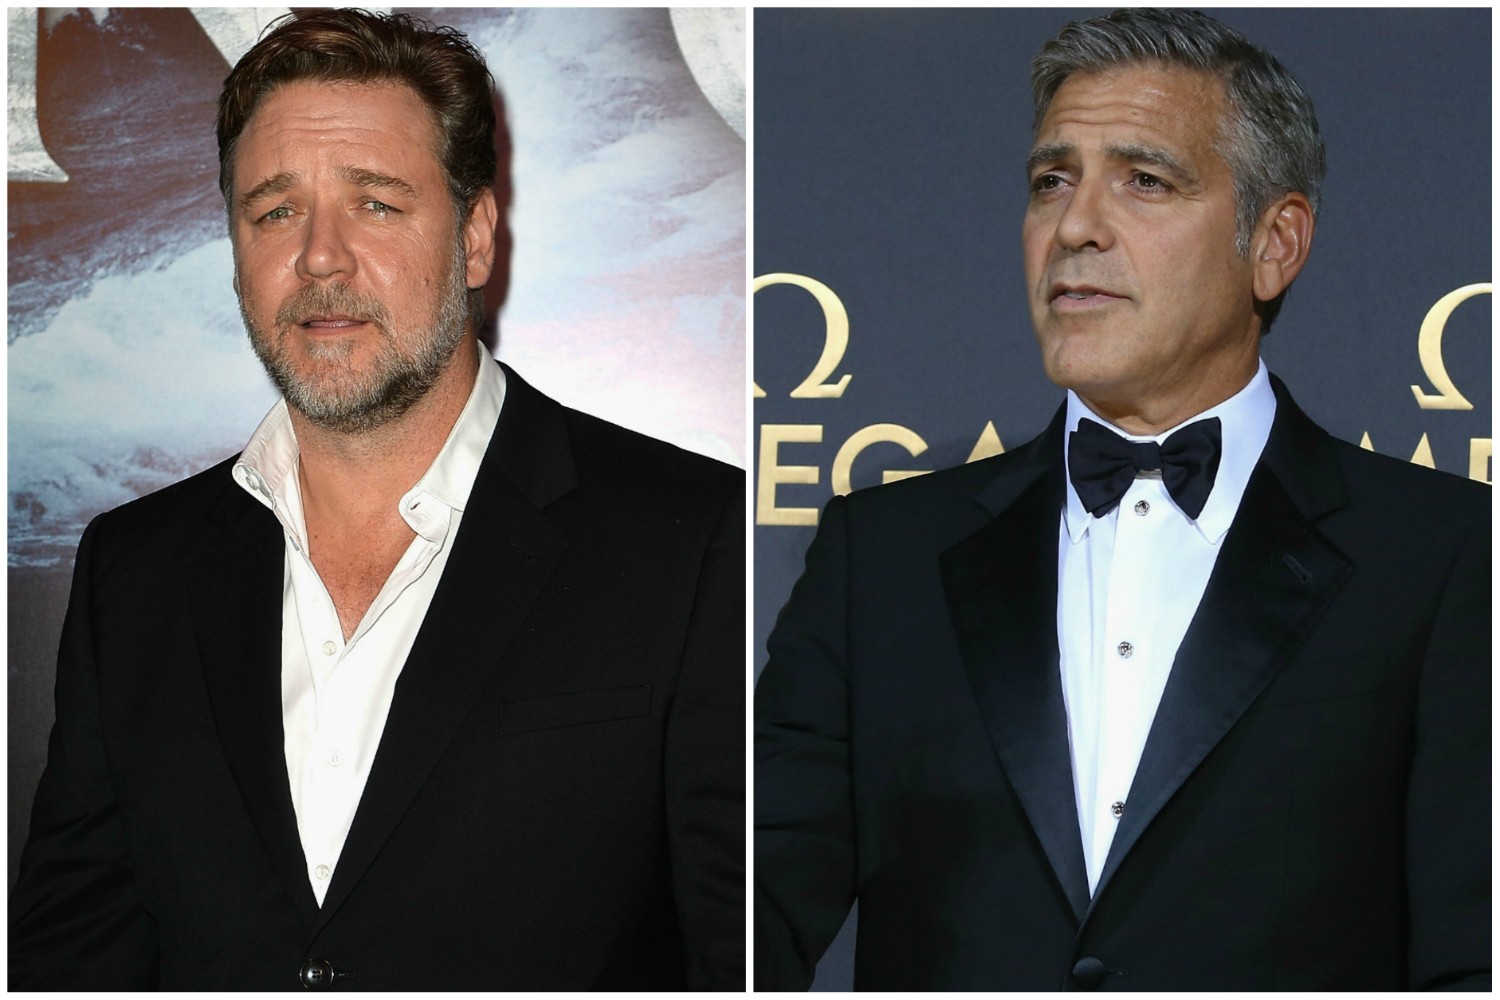 Os ânimos entre George Clooney (à dir.) e Russell Crowe já não estão tão exaltados. Ainda assim, esses dois atores não se toleram. Crowe acha Clooney "vendido" para a indústria do entretenimento, e não tem a menor vergonha de expressar isso com quantos palavrões julgar necessário. Clooney não fica atrás: devolve mais palavras pesadas e se mostra pouco interessado nas desculpas do colega de profissão. (Foto: Getty Images)